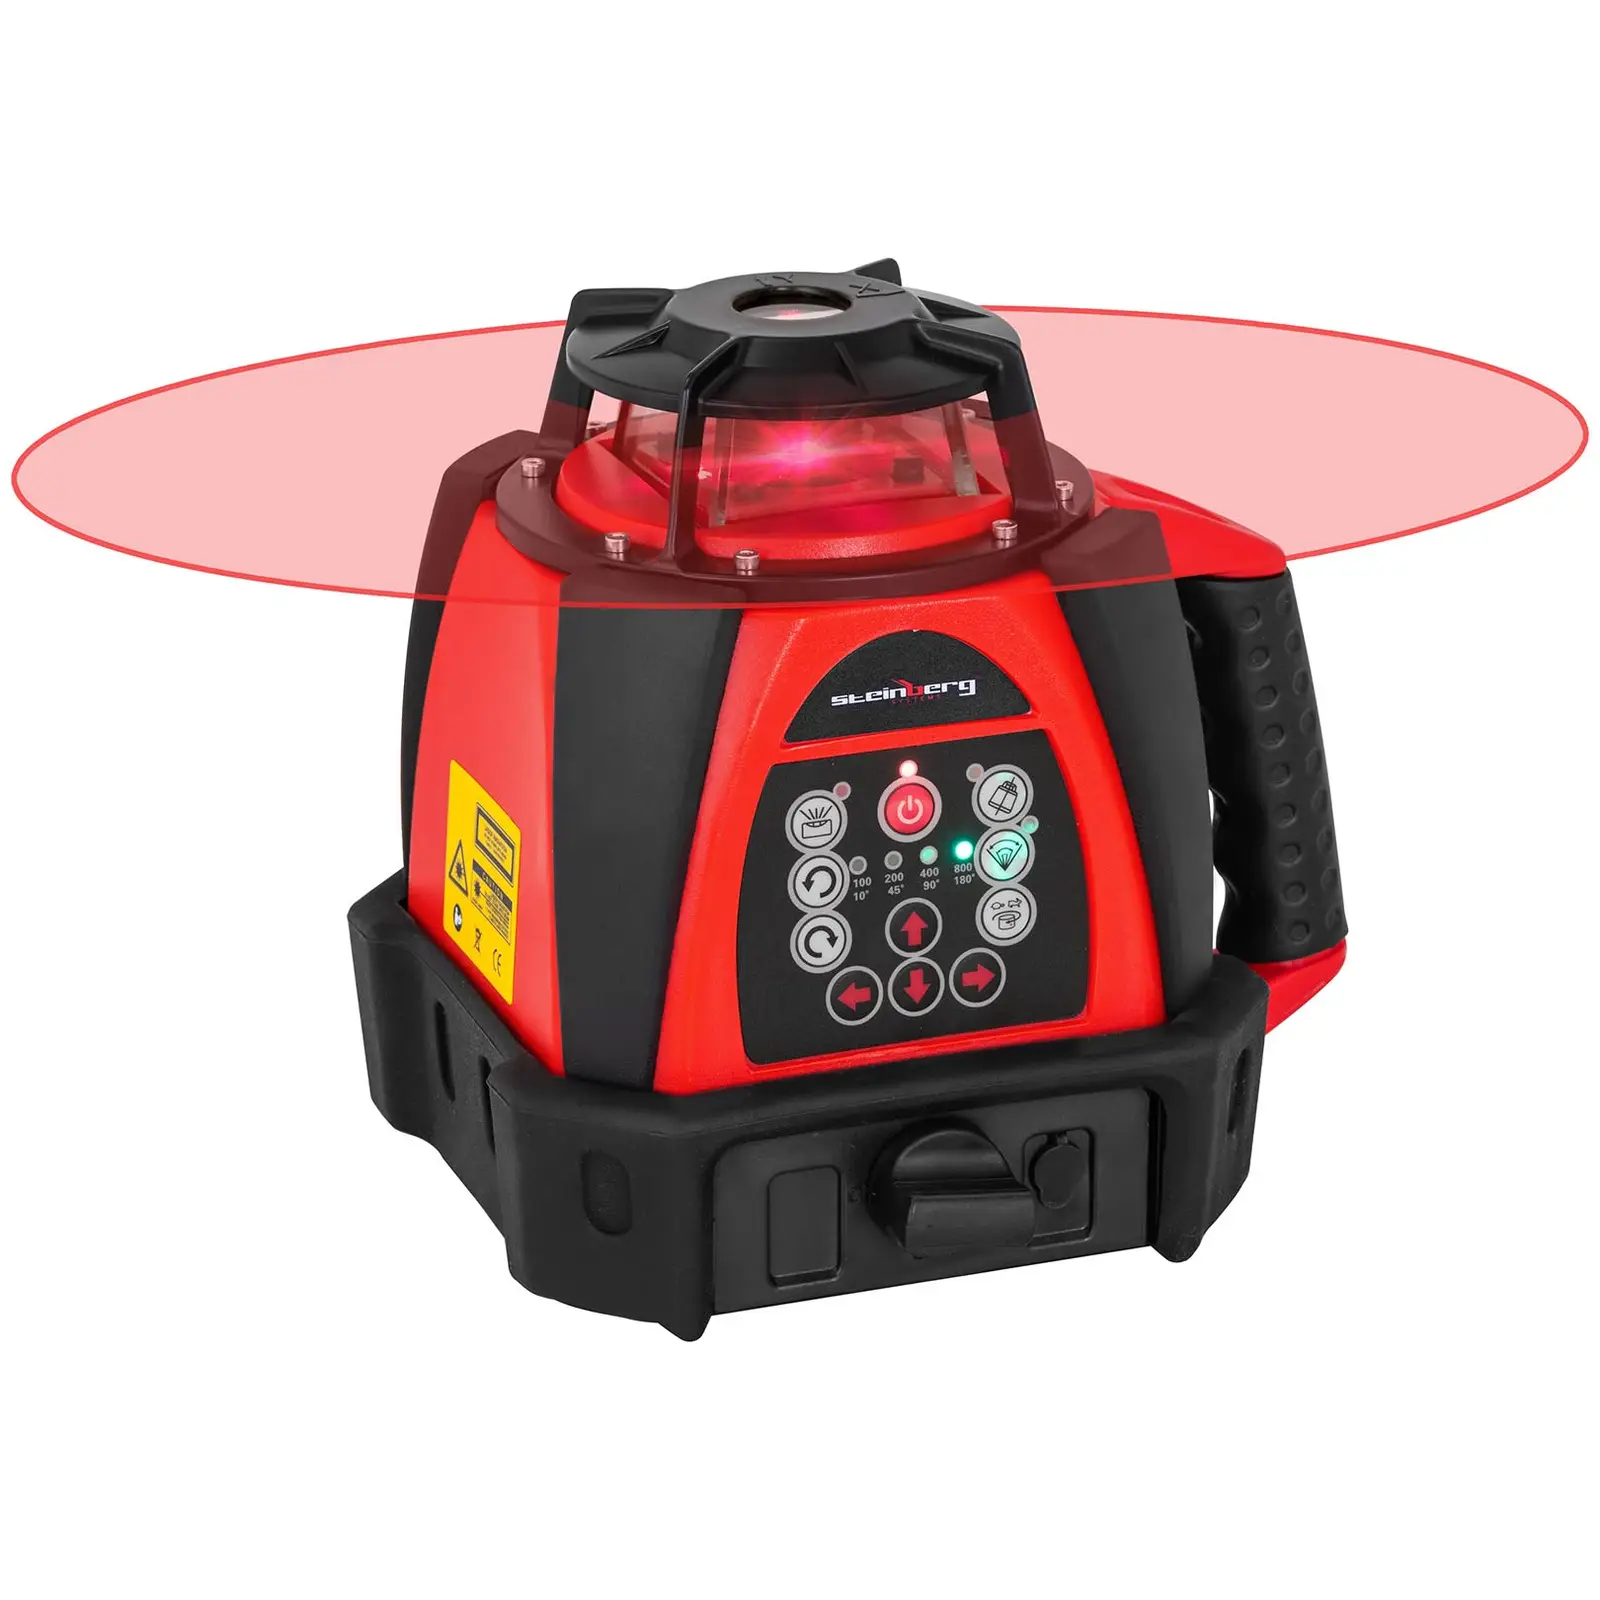 Laser rotativo - Ø500 m - vermelho